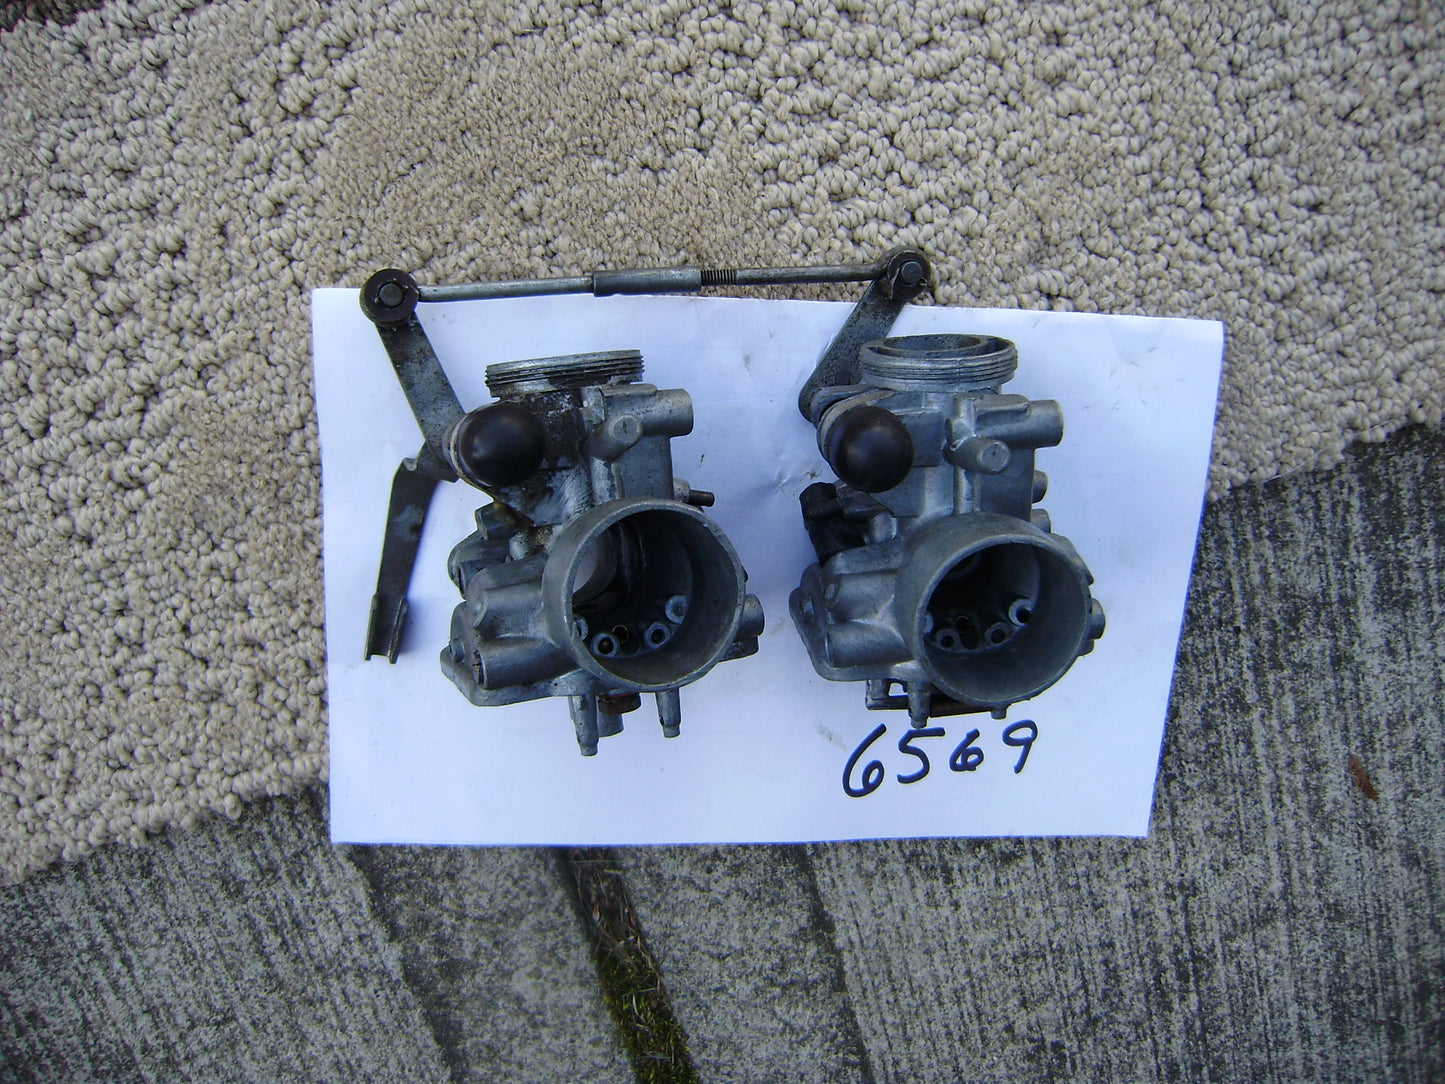 Keihin 20mm Twin  Carburetors for parts sku 6569